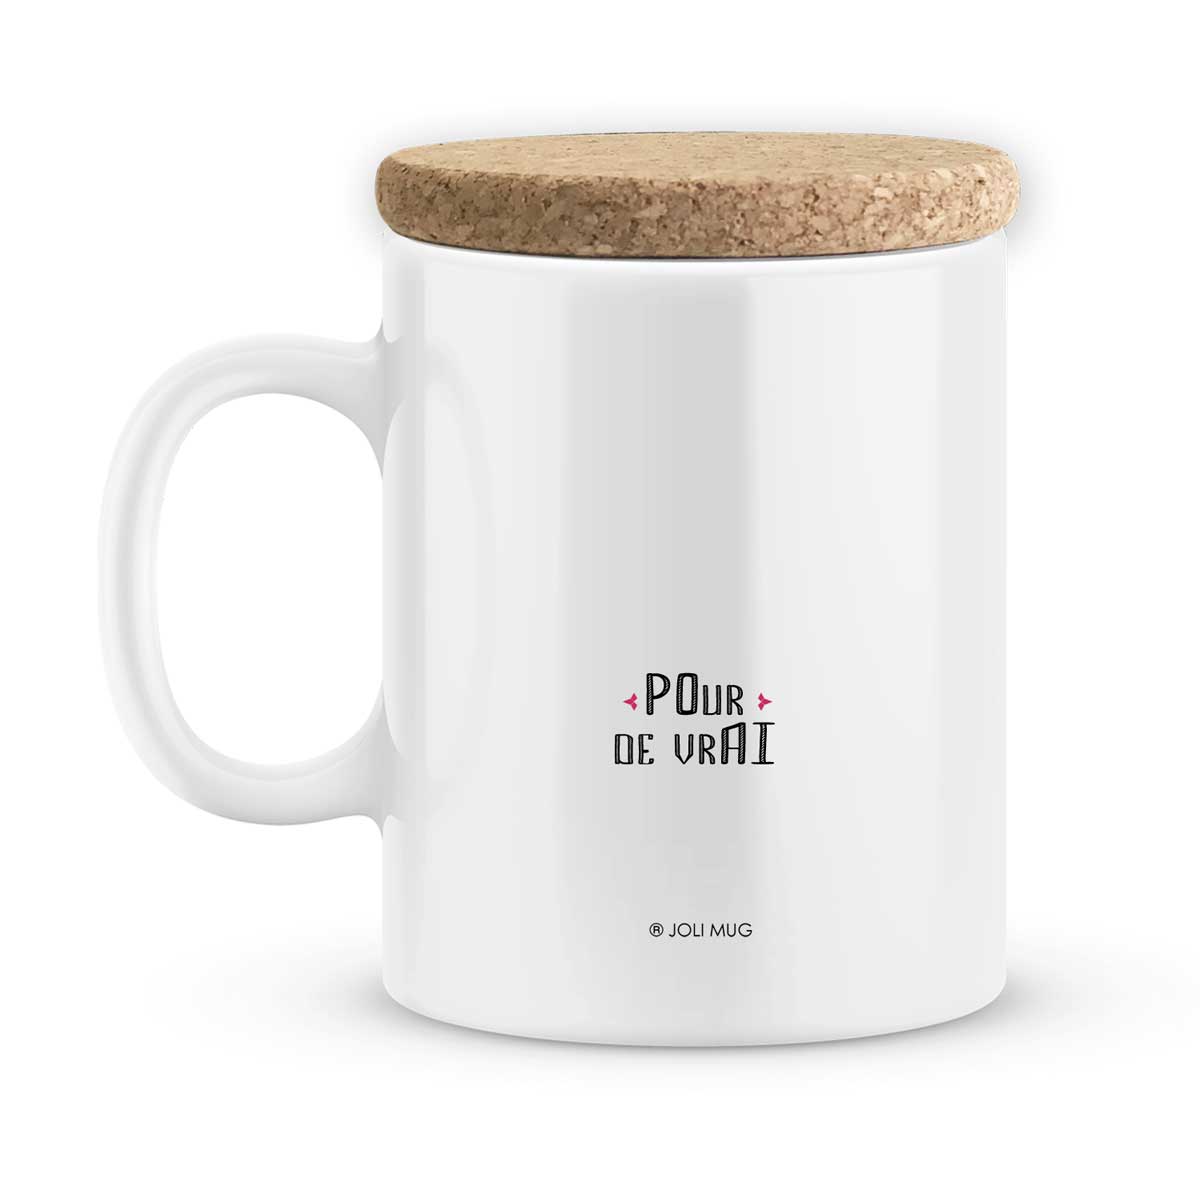 Mug personnalisé avec prénom, cadeau mug à personnaliser ori